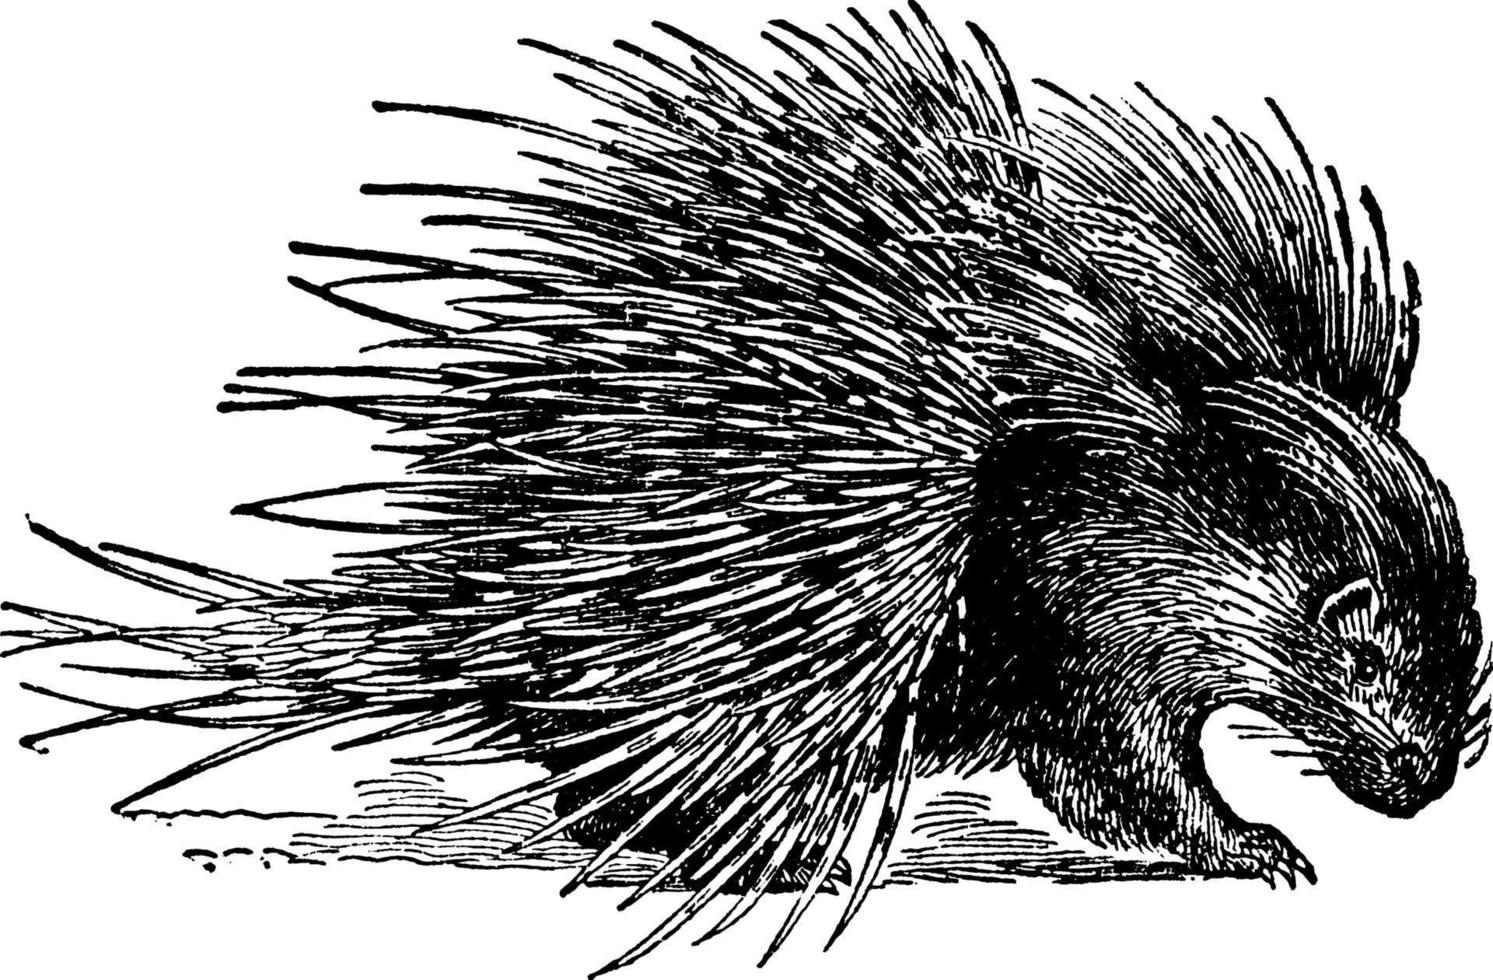 porco-espinho hystrix crystata, ilustração vintage. vetor